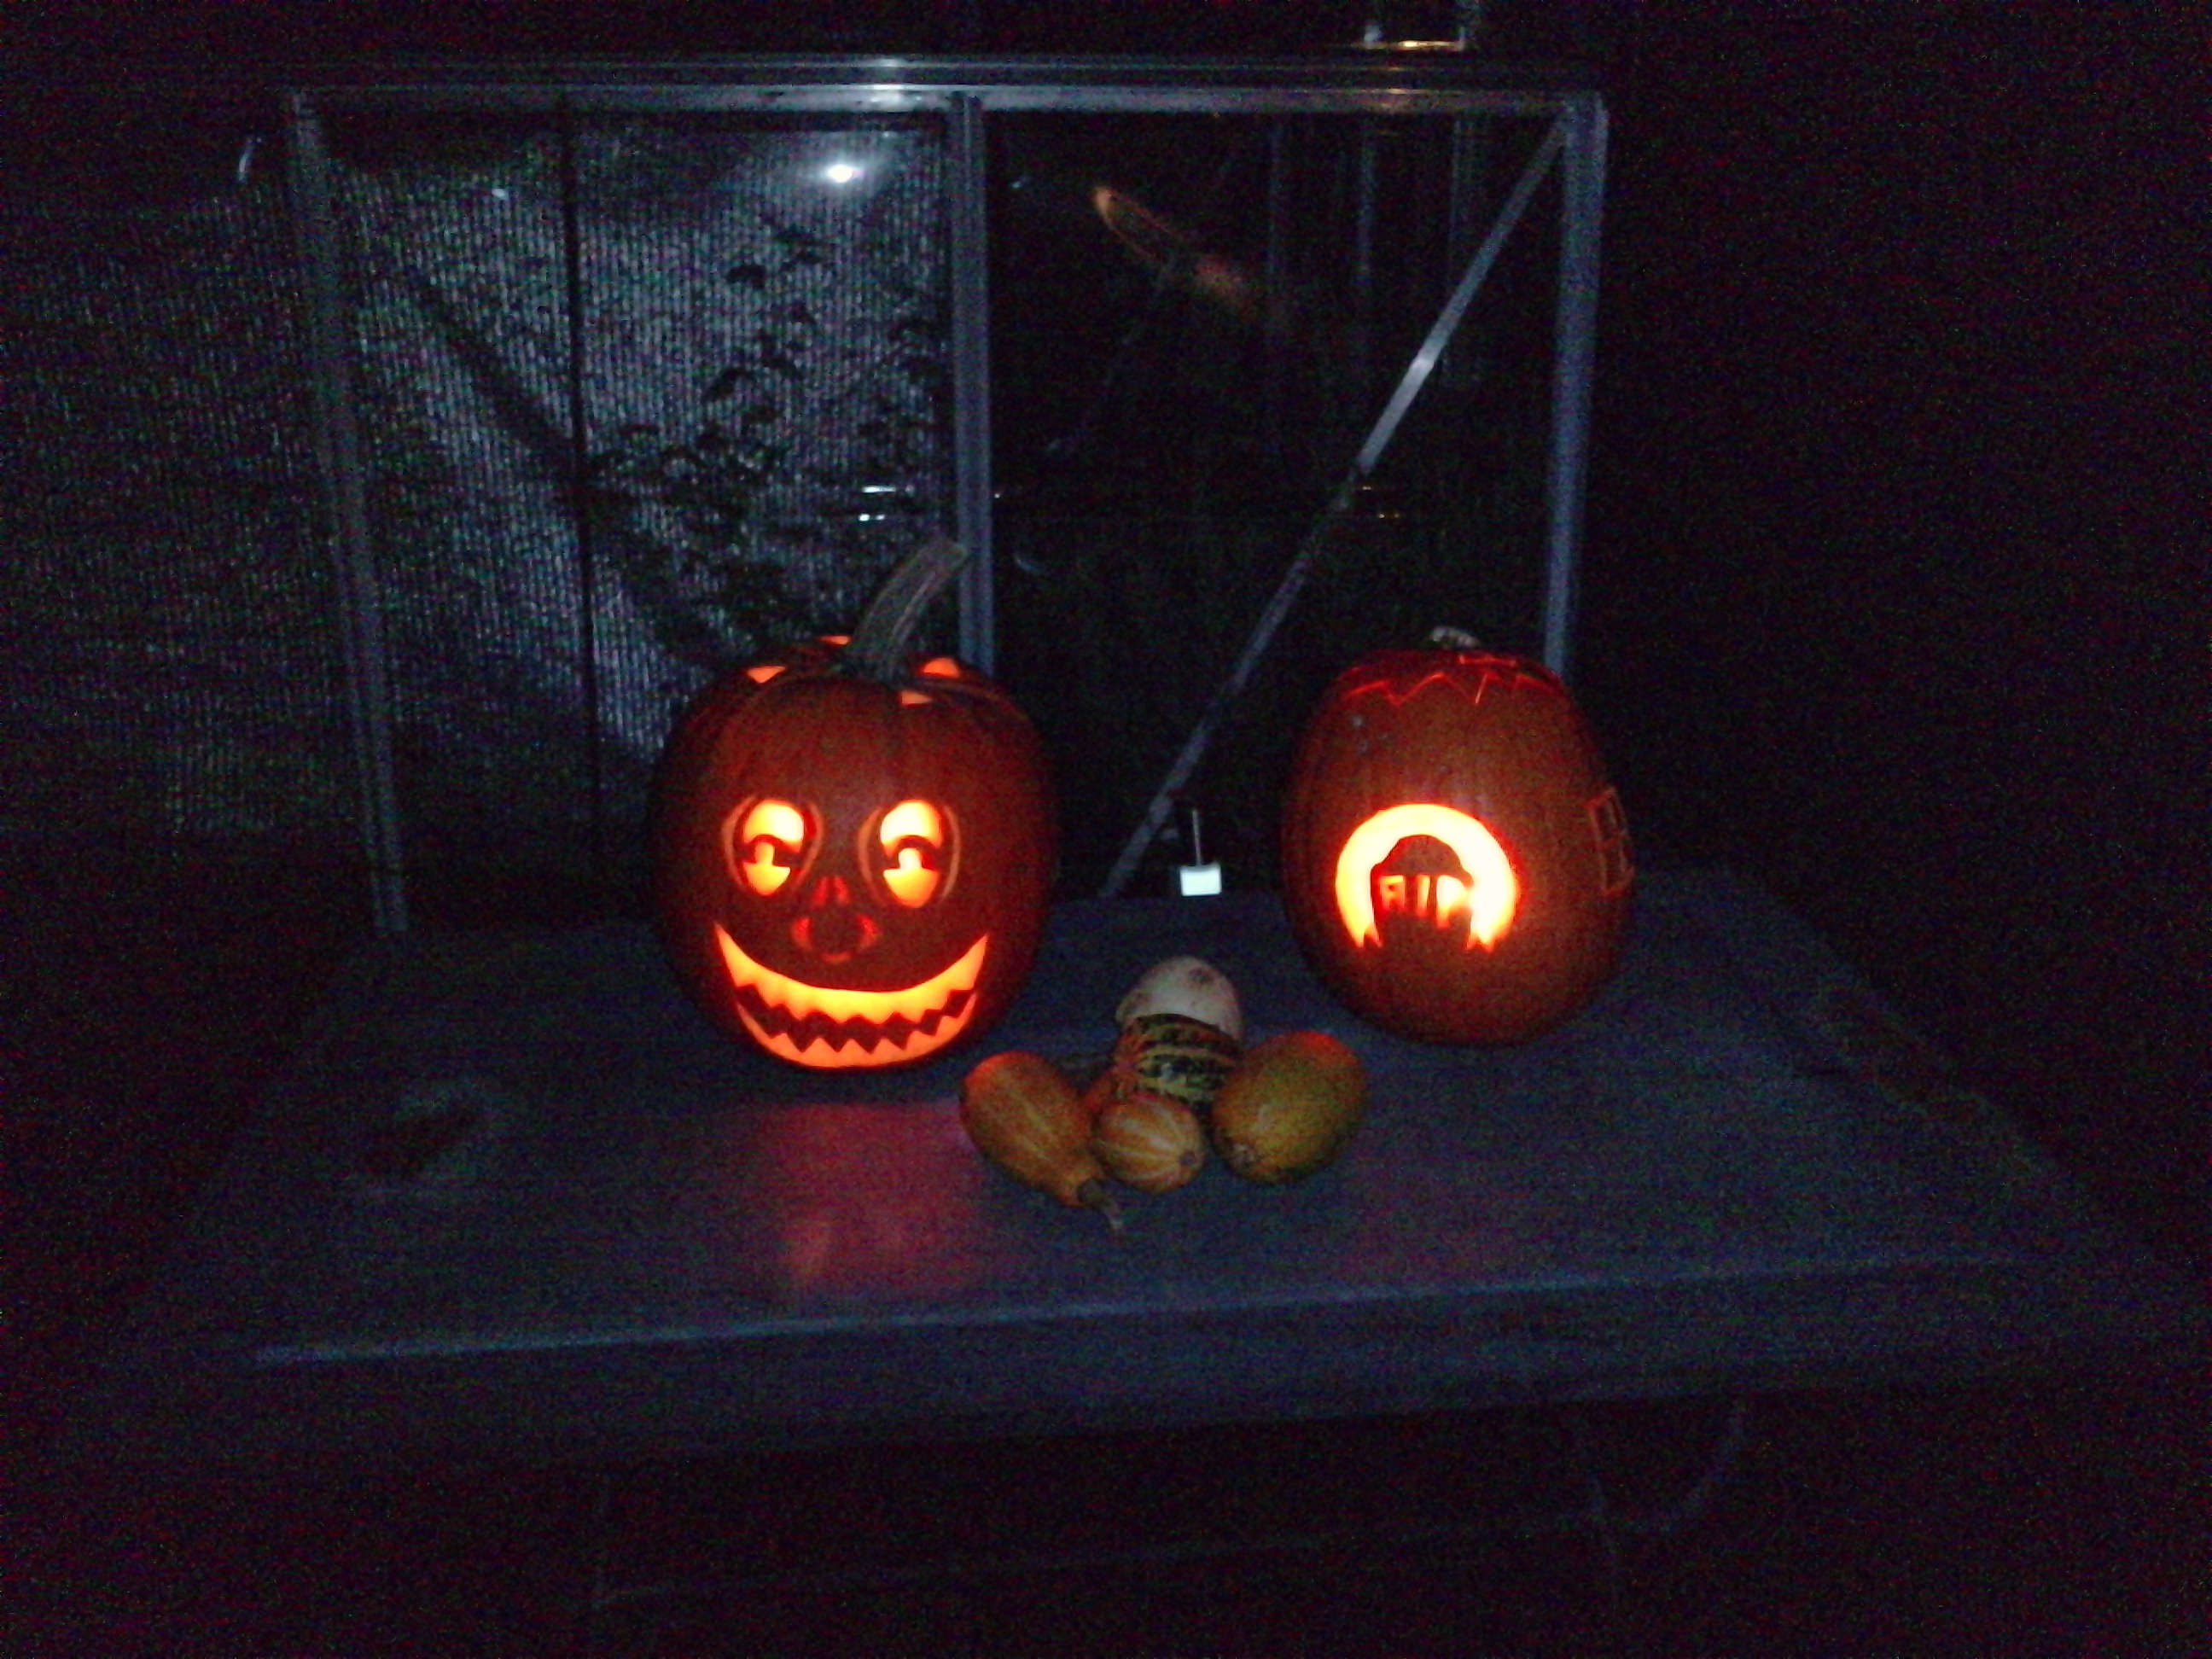 www.assensvej.dk/gfx/Halloween3.JPG